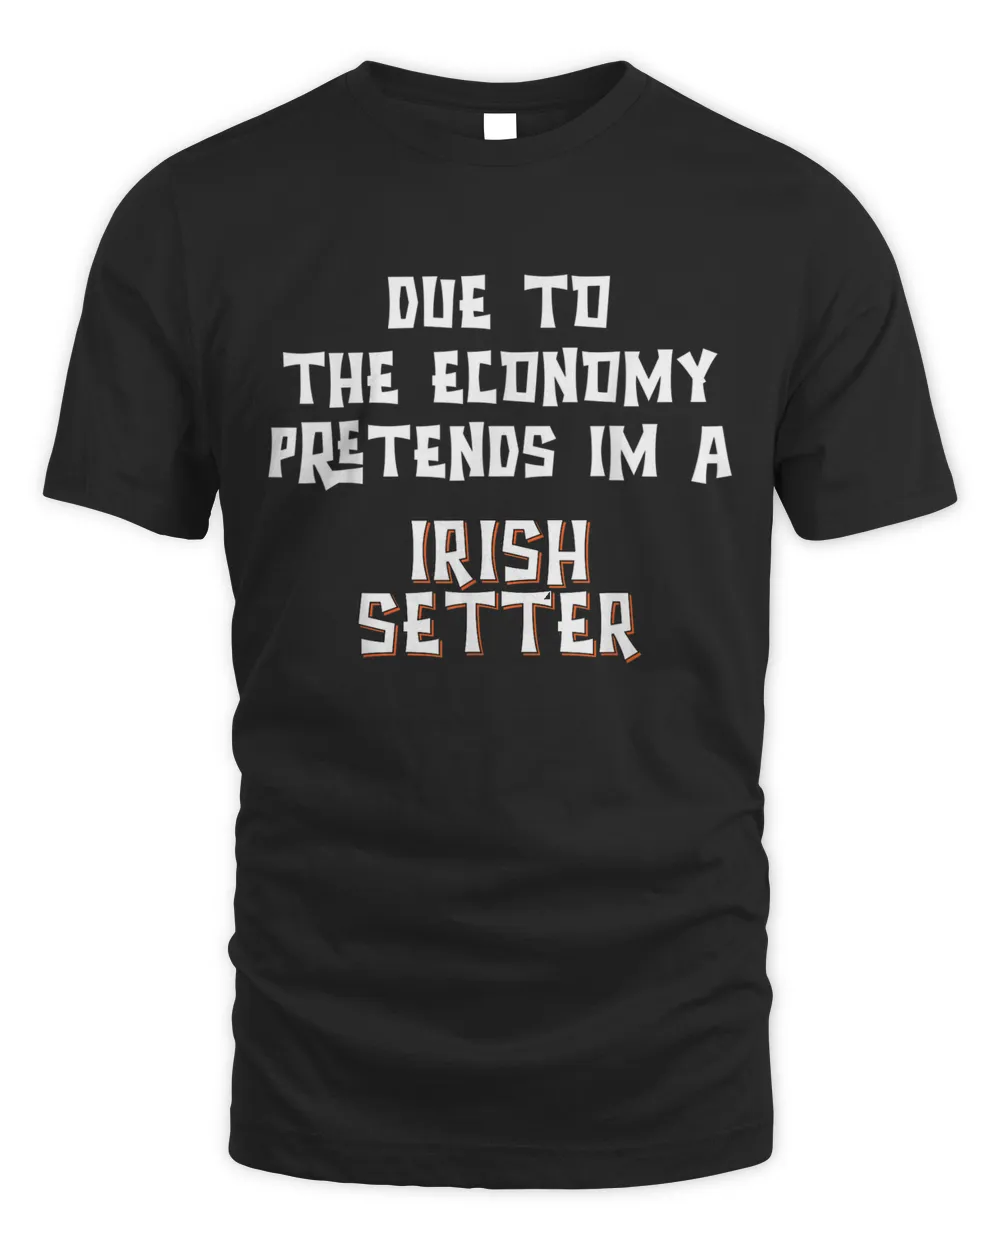 Due To Economy Pretend Irish Setter Easy Halloween Costume T-shirt